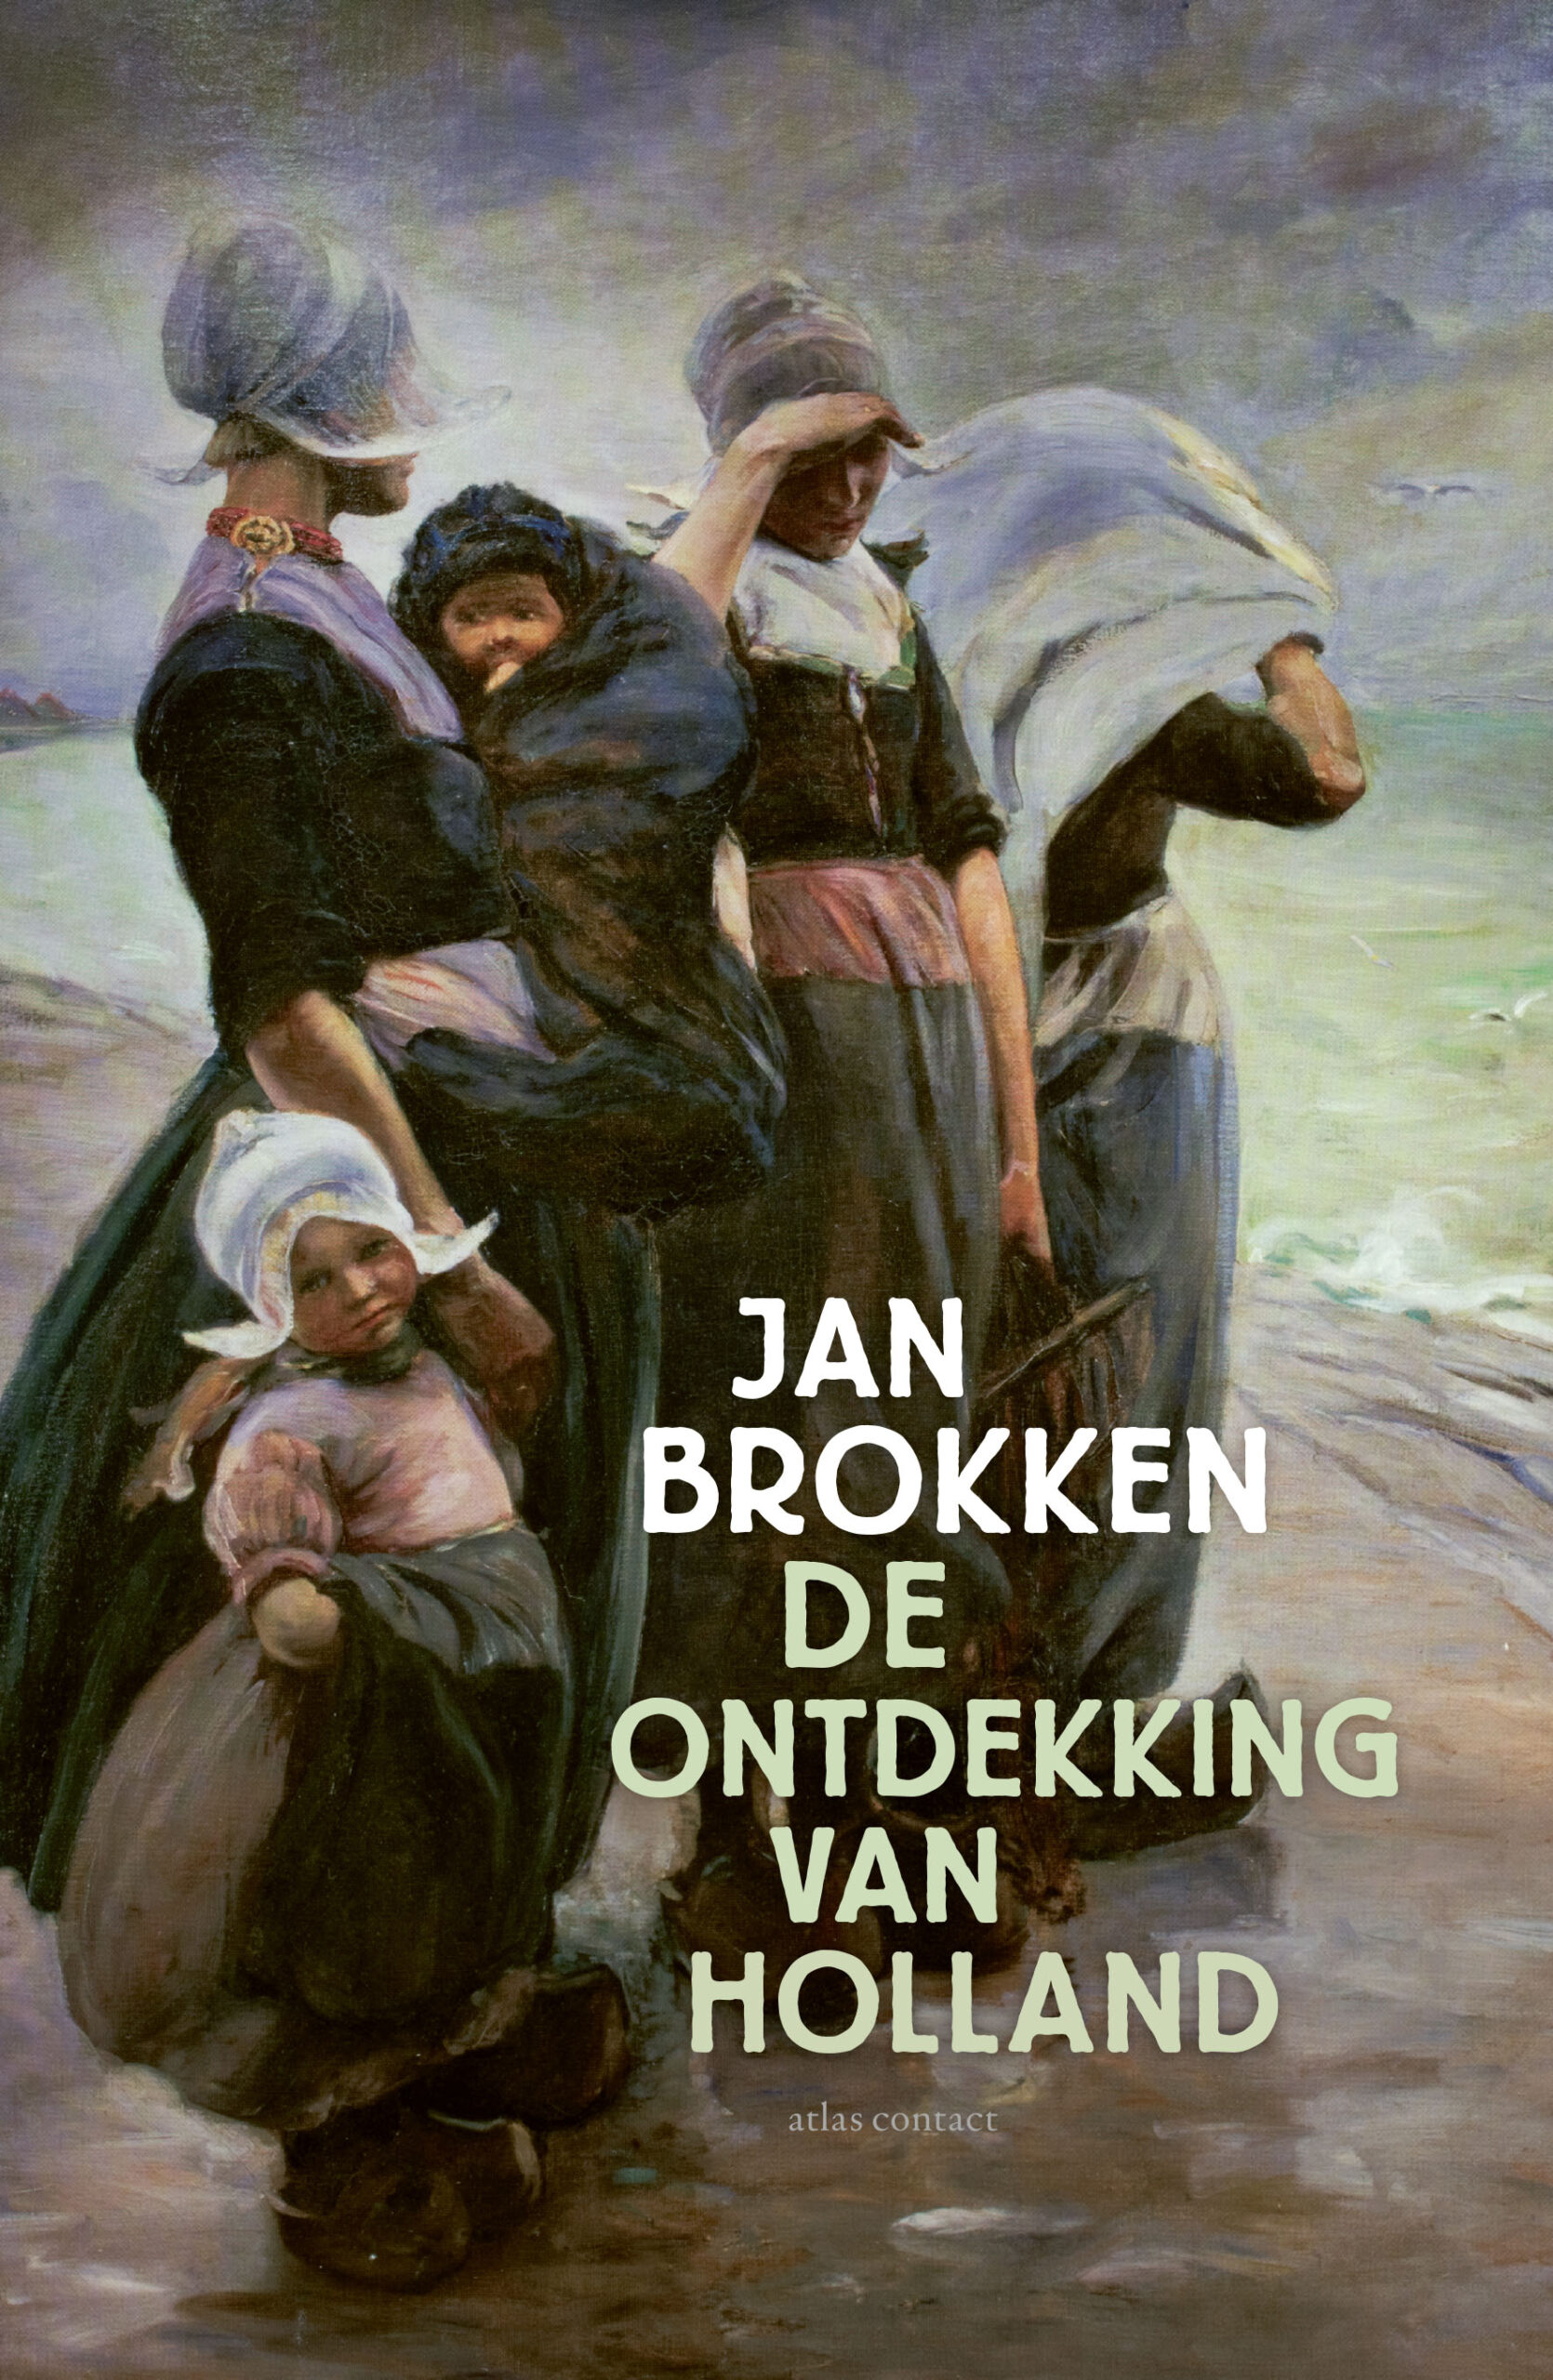 Jan Brokken over ‘De ontdekking van Holland’ in Den Haag